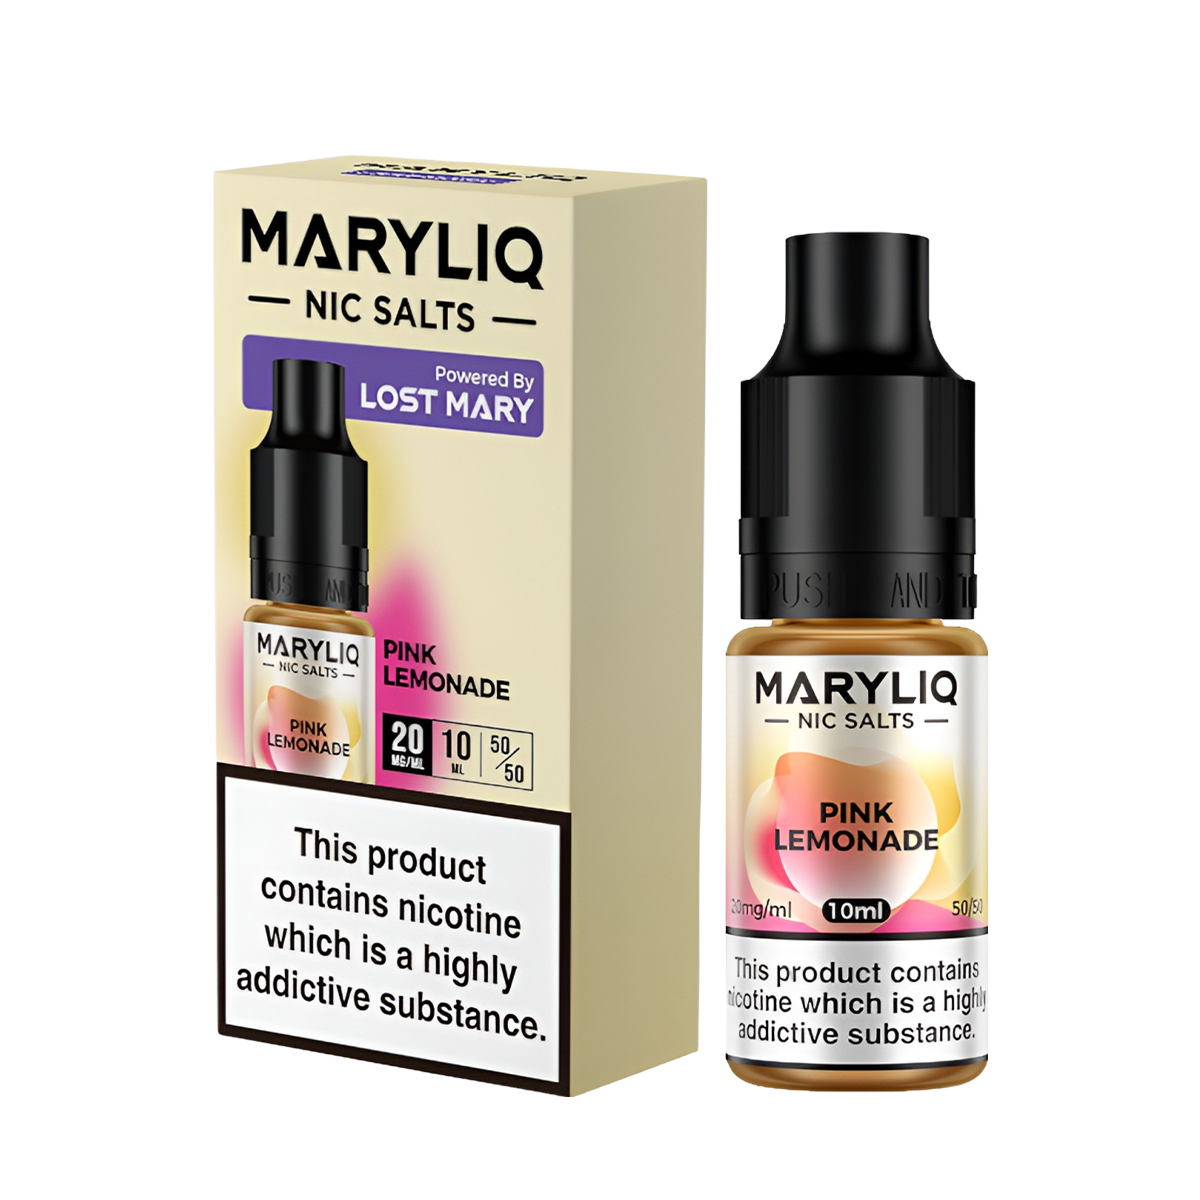 Lost Mary Maryliq Salt Nicotine Vape Juice 20 Mg 10 Ml Pink Lemonade